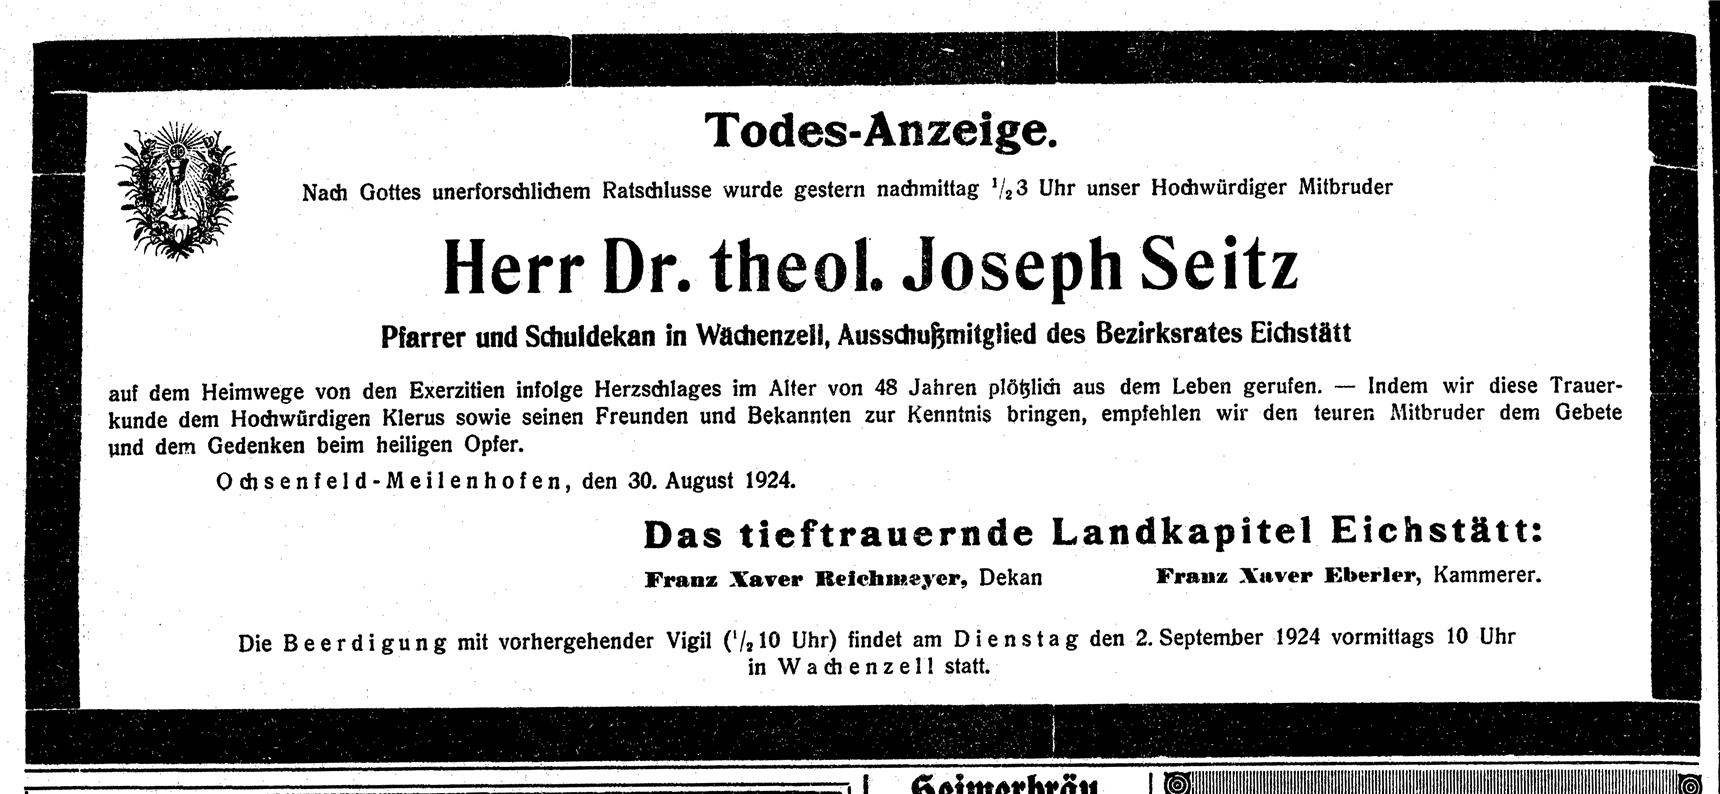 Todesanzeige im Eichstätter Volksblatt am 30. August 1924 (Archiv)